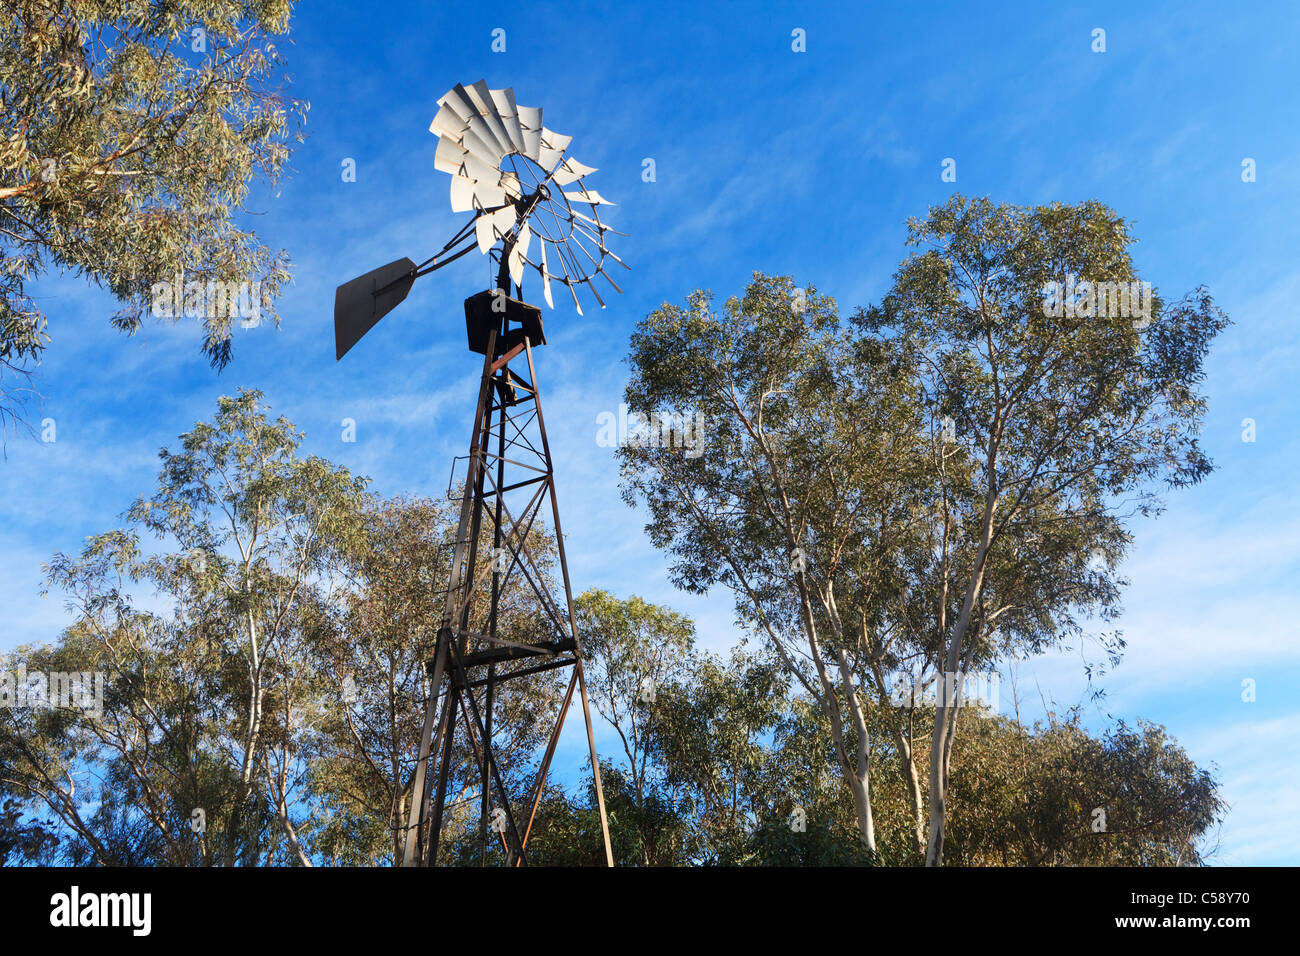 Eine Wasser-Pumpe-Windmühle, umgeben von Eukalyptusbäumen, die in der Regel um australische Ackerland gefunden Stockfoto